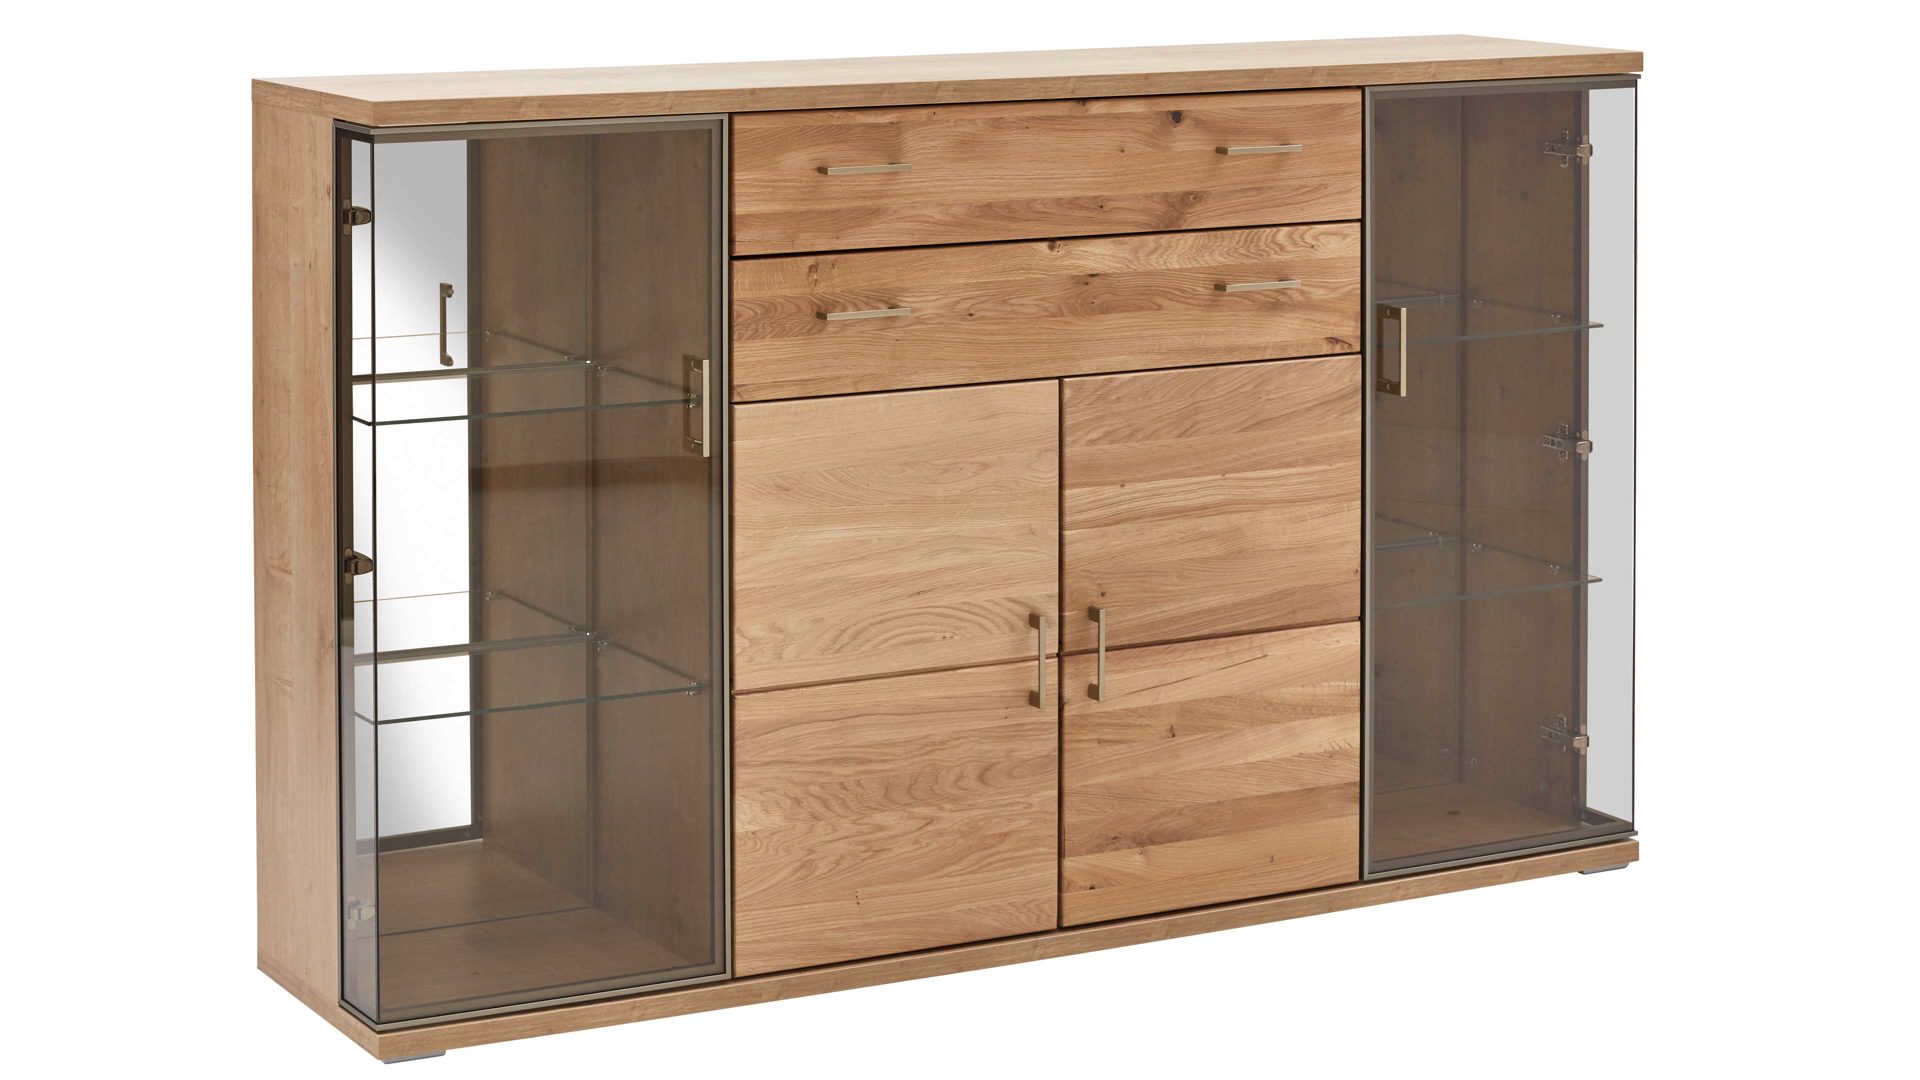 Sideboard Ideal möbel aus Holz in Holzfarben Wohnprogramm Brilon - Sideboard Alteiche & braunes Parsolglas – vier Türen, zwei Schubladen